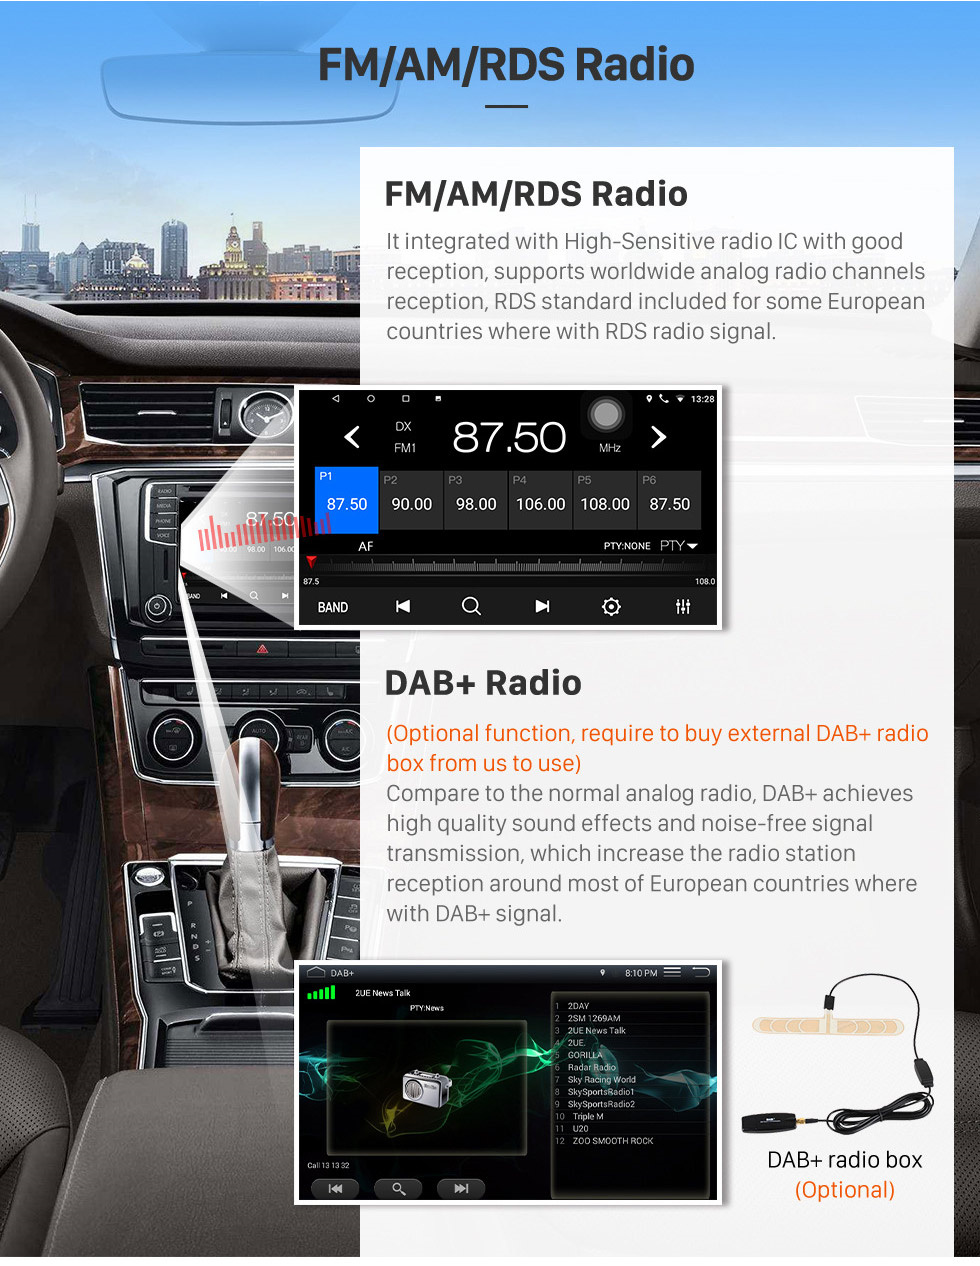 Seicane OEM 9 pulgadas Android 10.0 Radio para 2014-2018 Changan Benni Bluetooth WIFI HD Pantalla táctil con soporte de navegación GPS Carplay DVR Cámara trasera